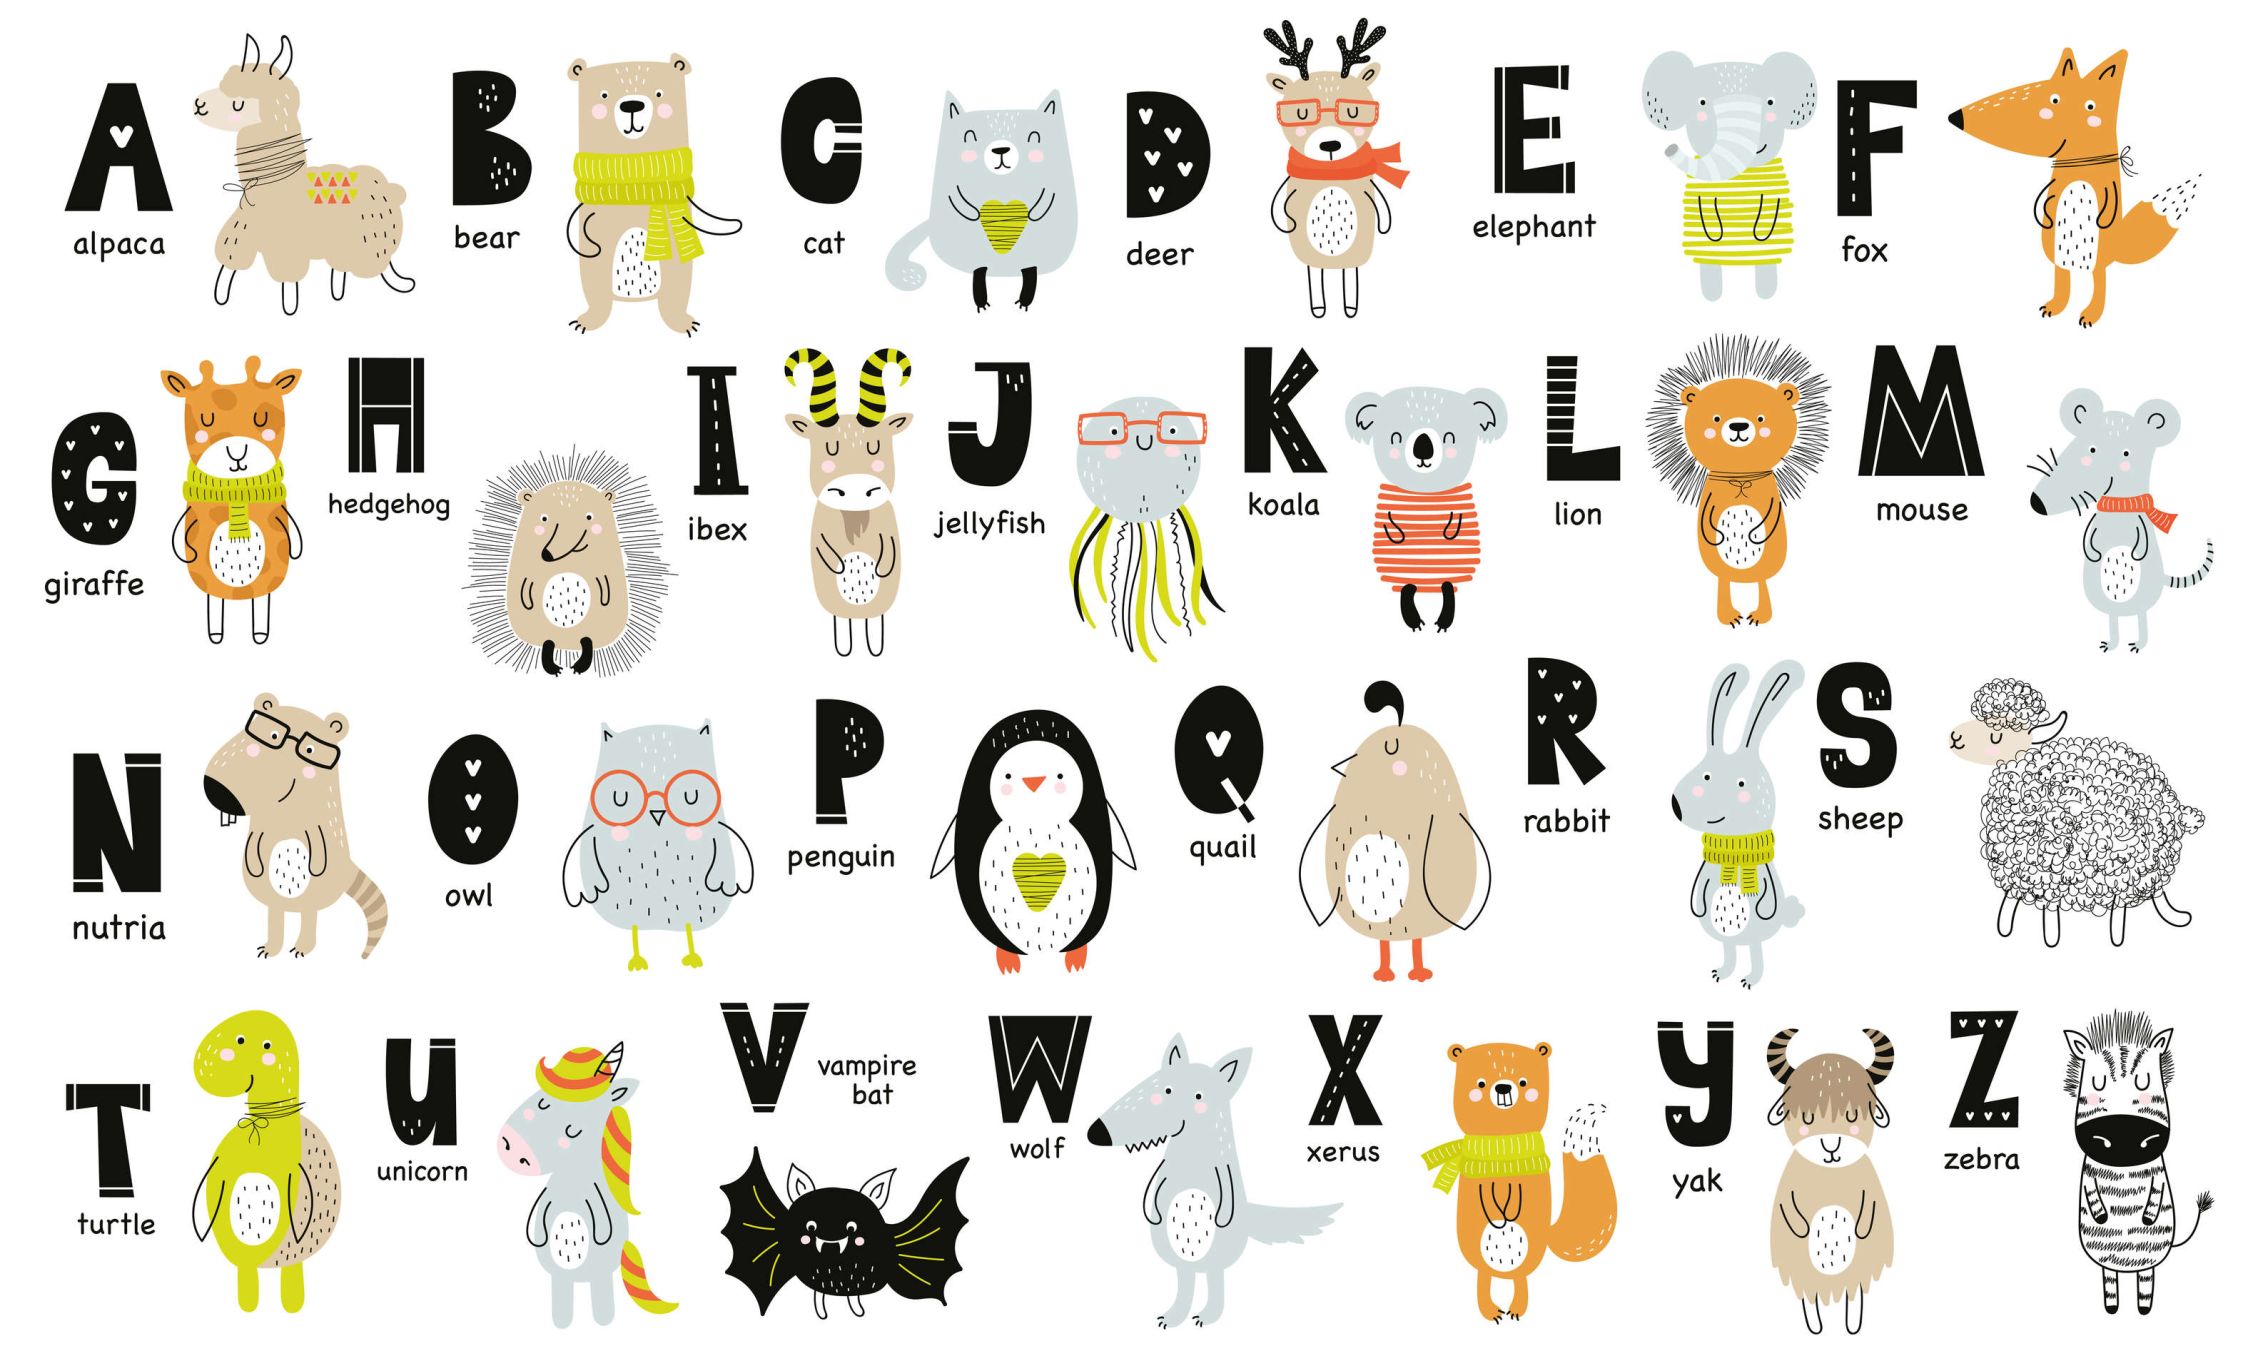             Fotomurali Alfabeto con animali e nomi di animali - Materiali non tessuto liscio e leggermente lucido
        